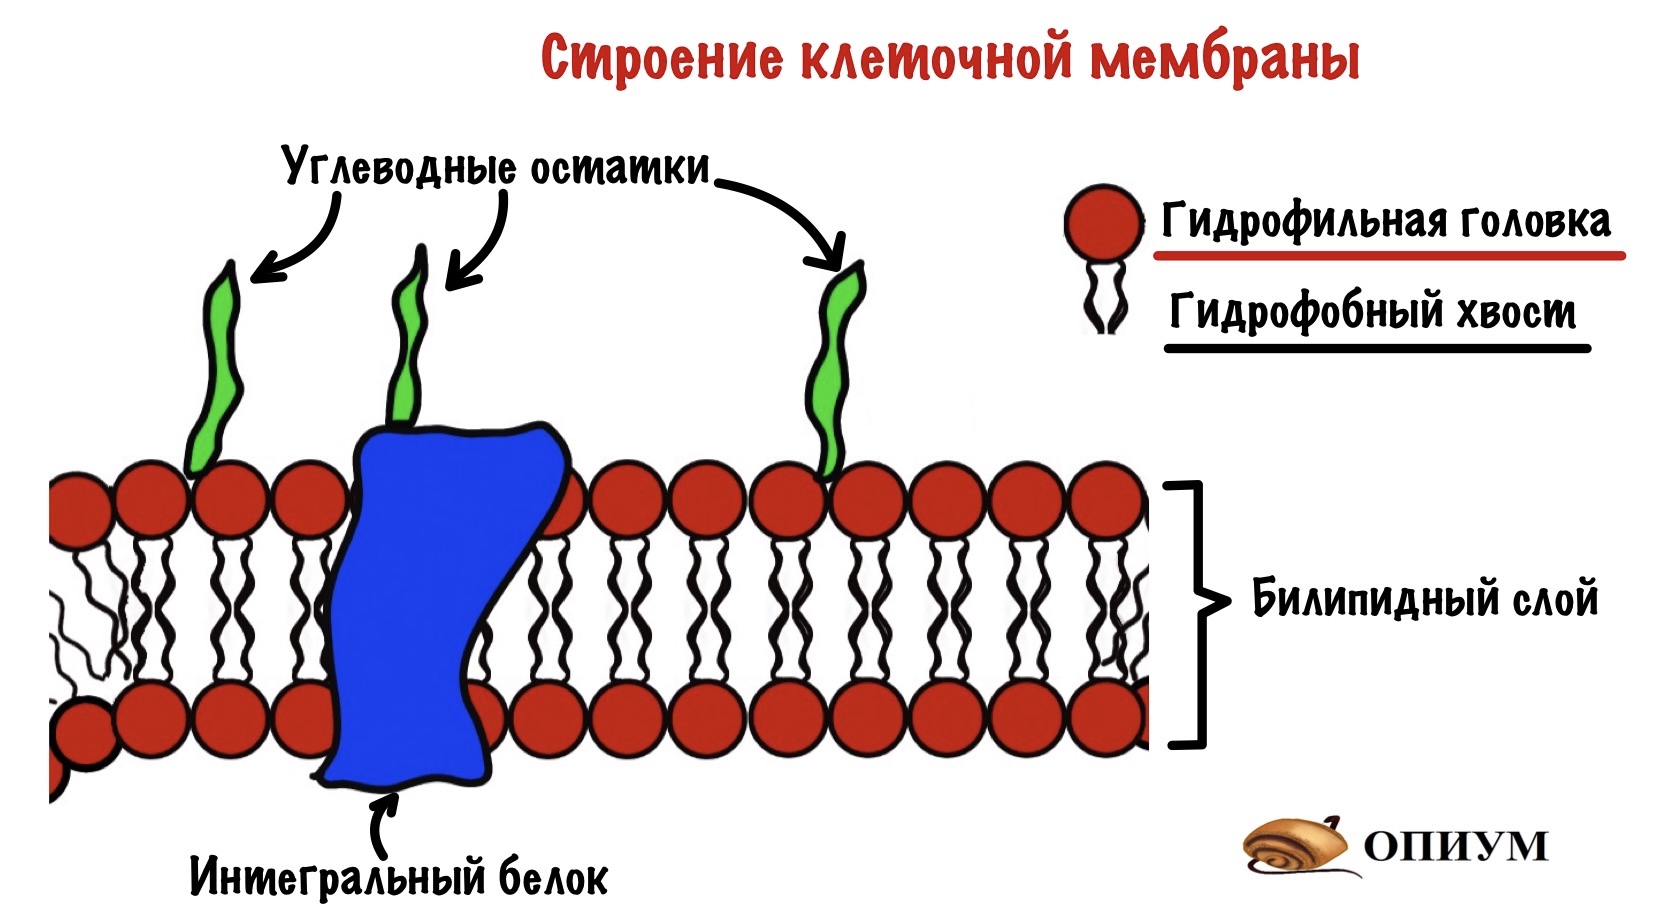 Наружная и внутренняя мембрана клетки. Строение клеточной мембраны рис 60. Строение мембраны клетки. Схема клеточной мембраны. Структура клеточной мембраны.